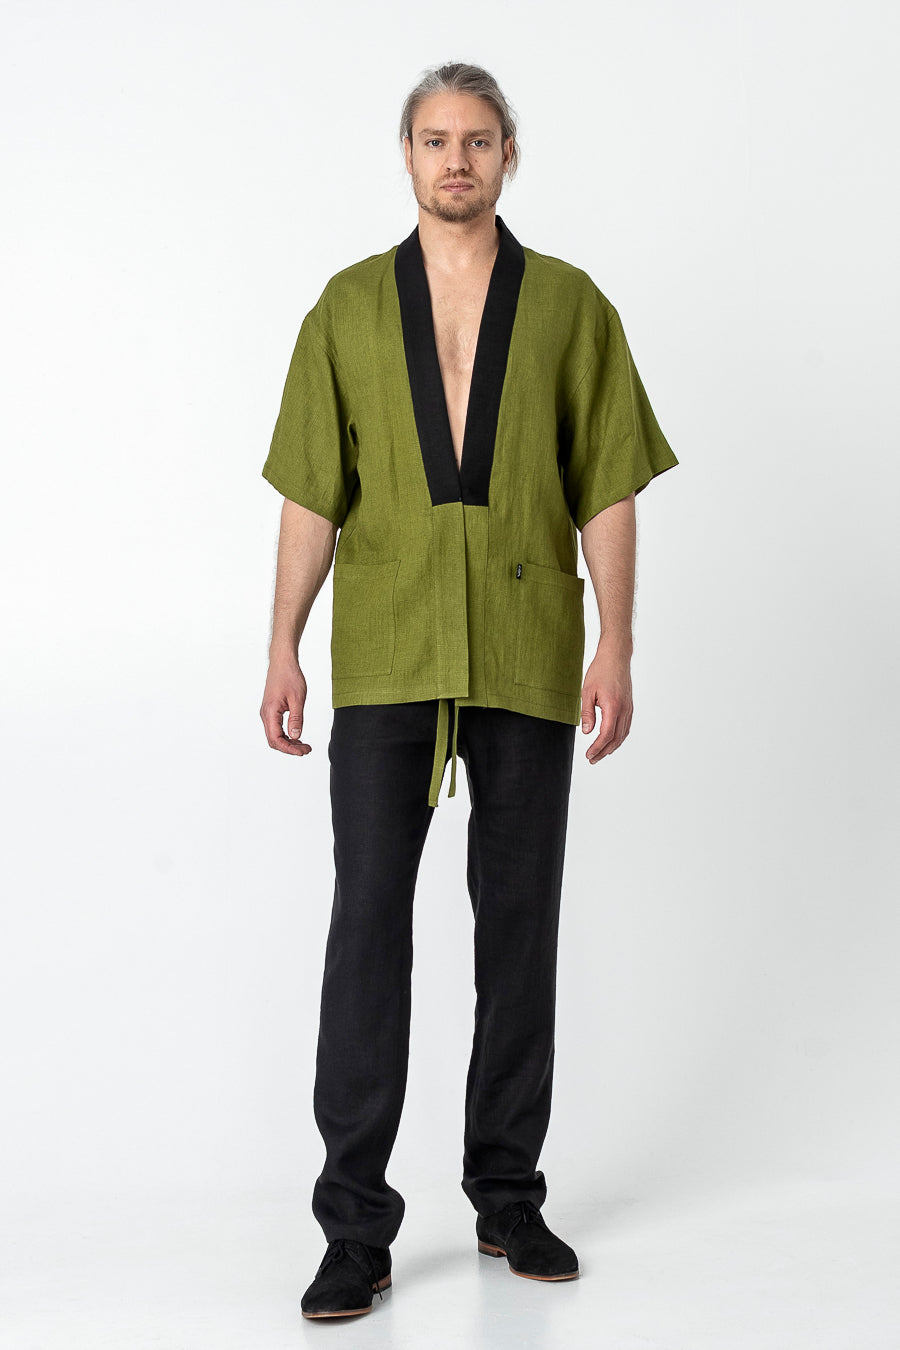 Kimono Men's Jacket